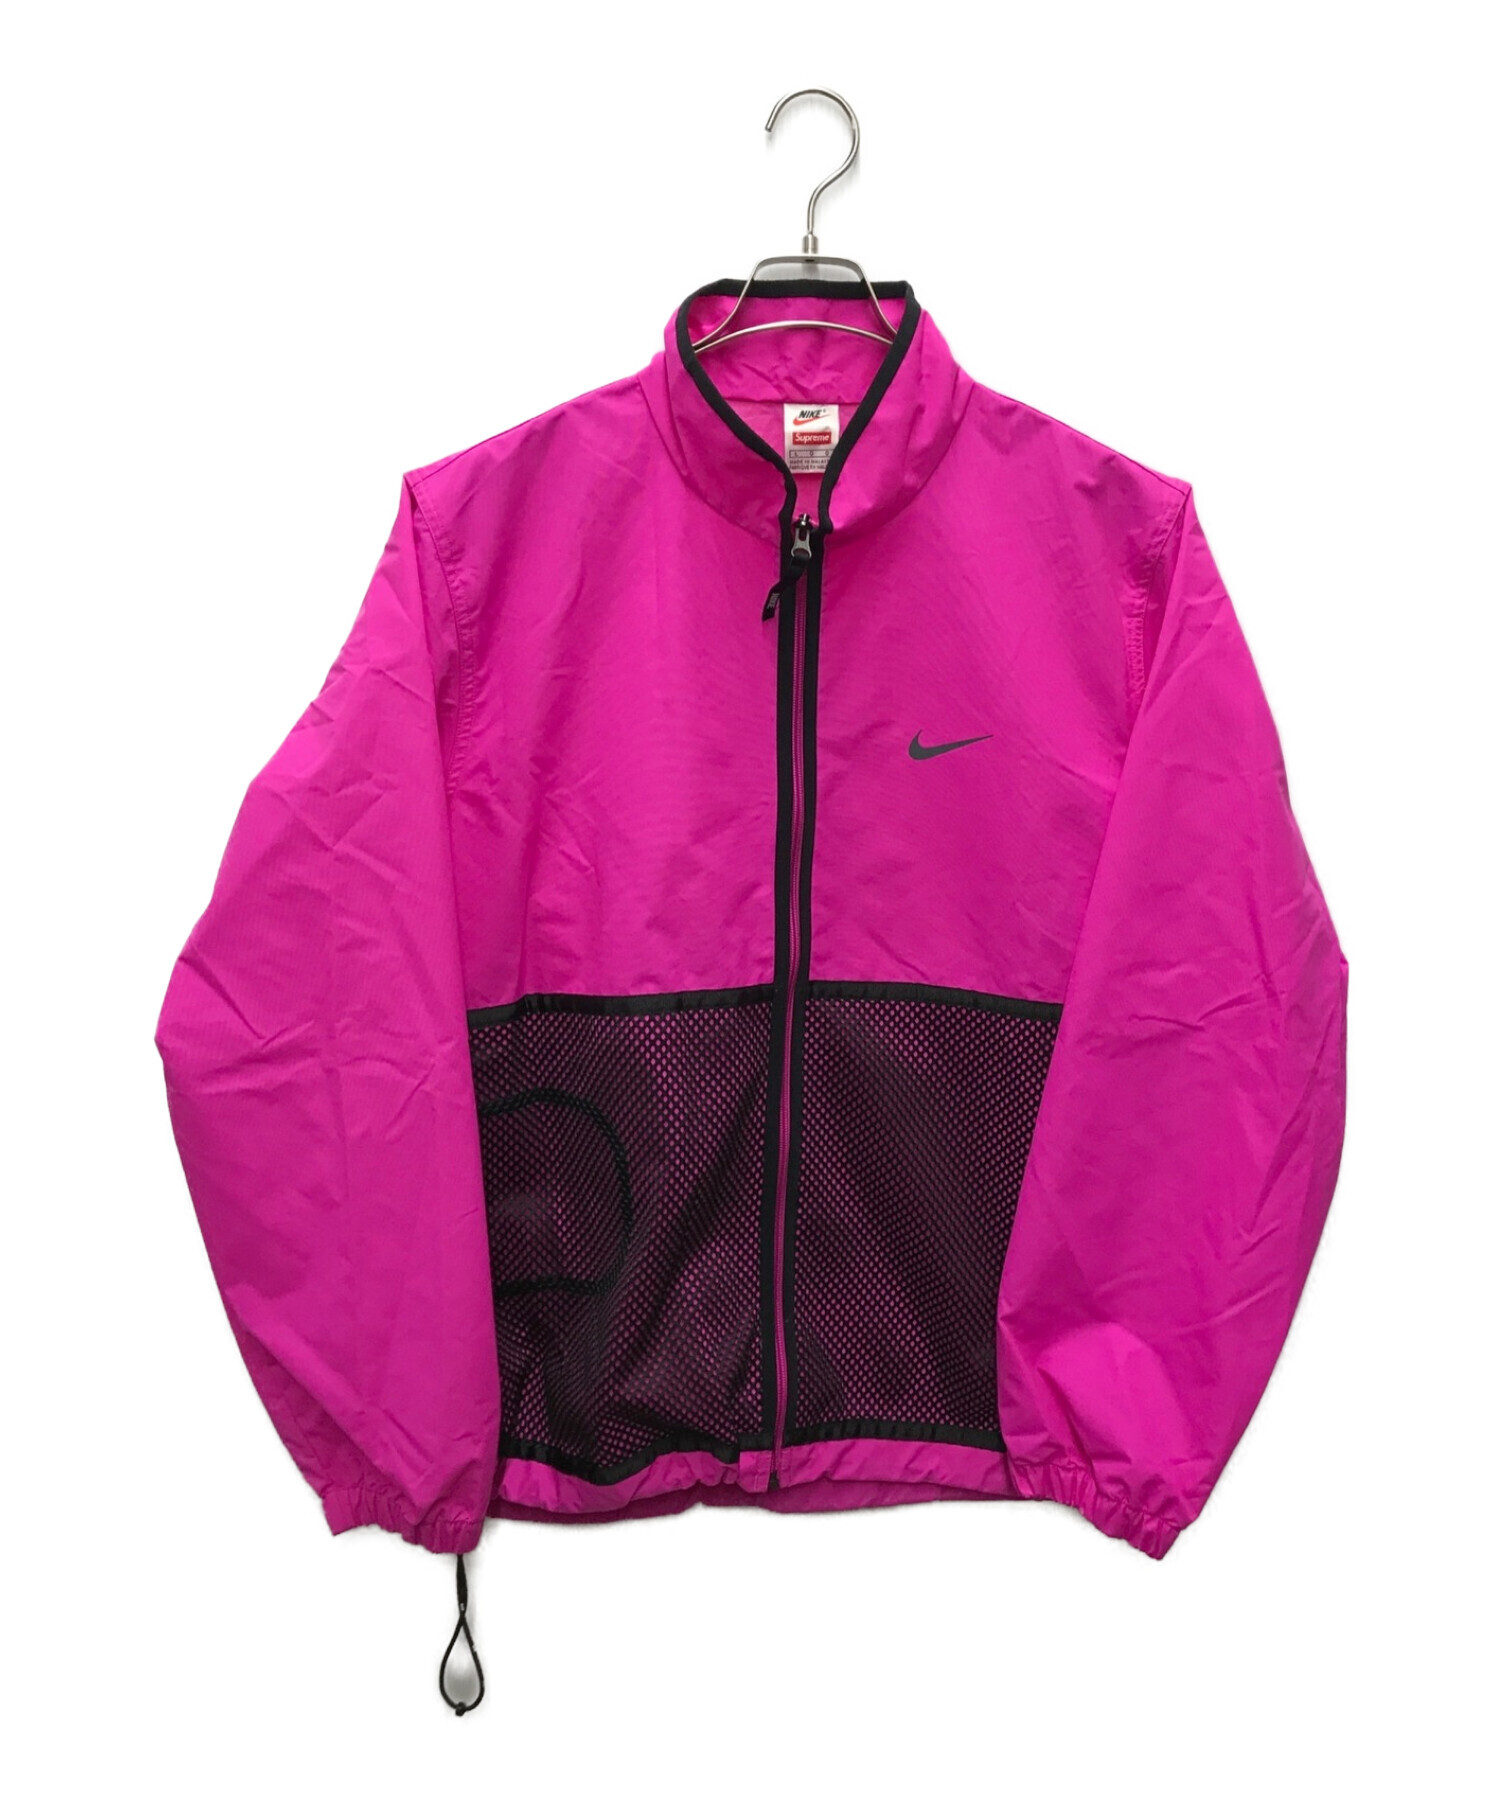 Supreme Nike Trail Running Jacket